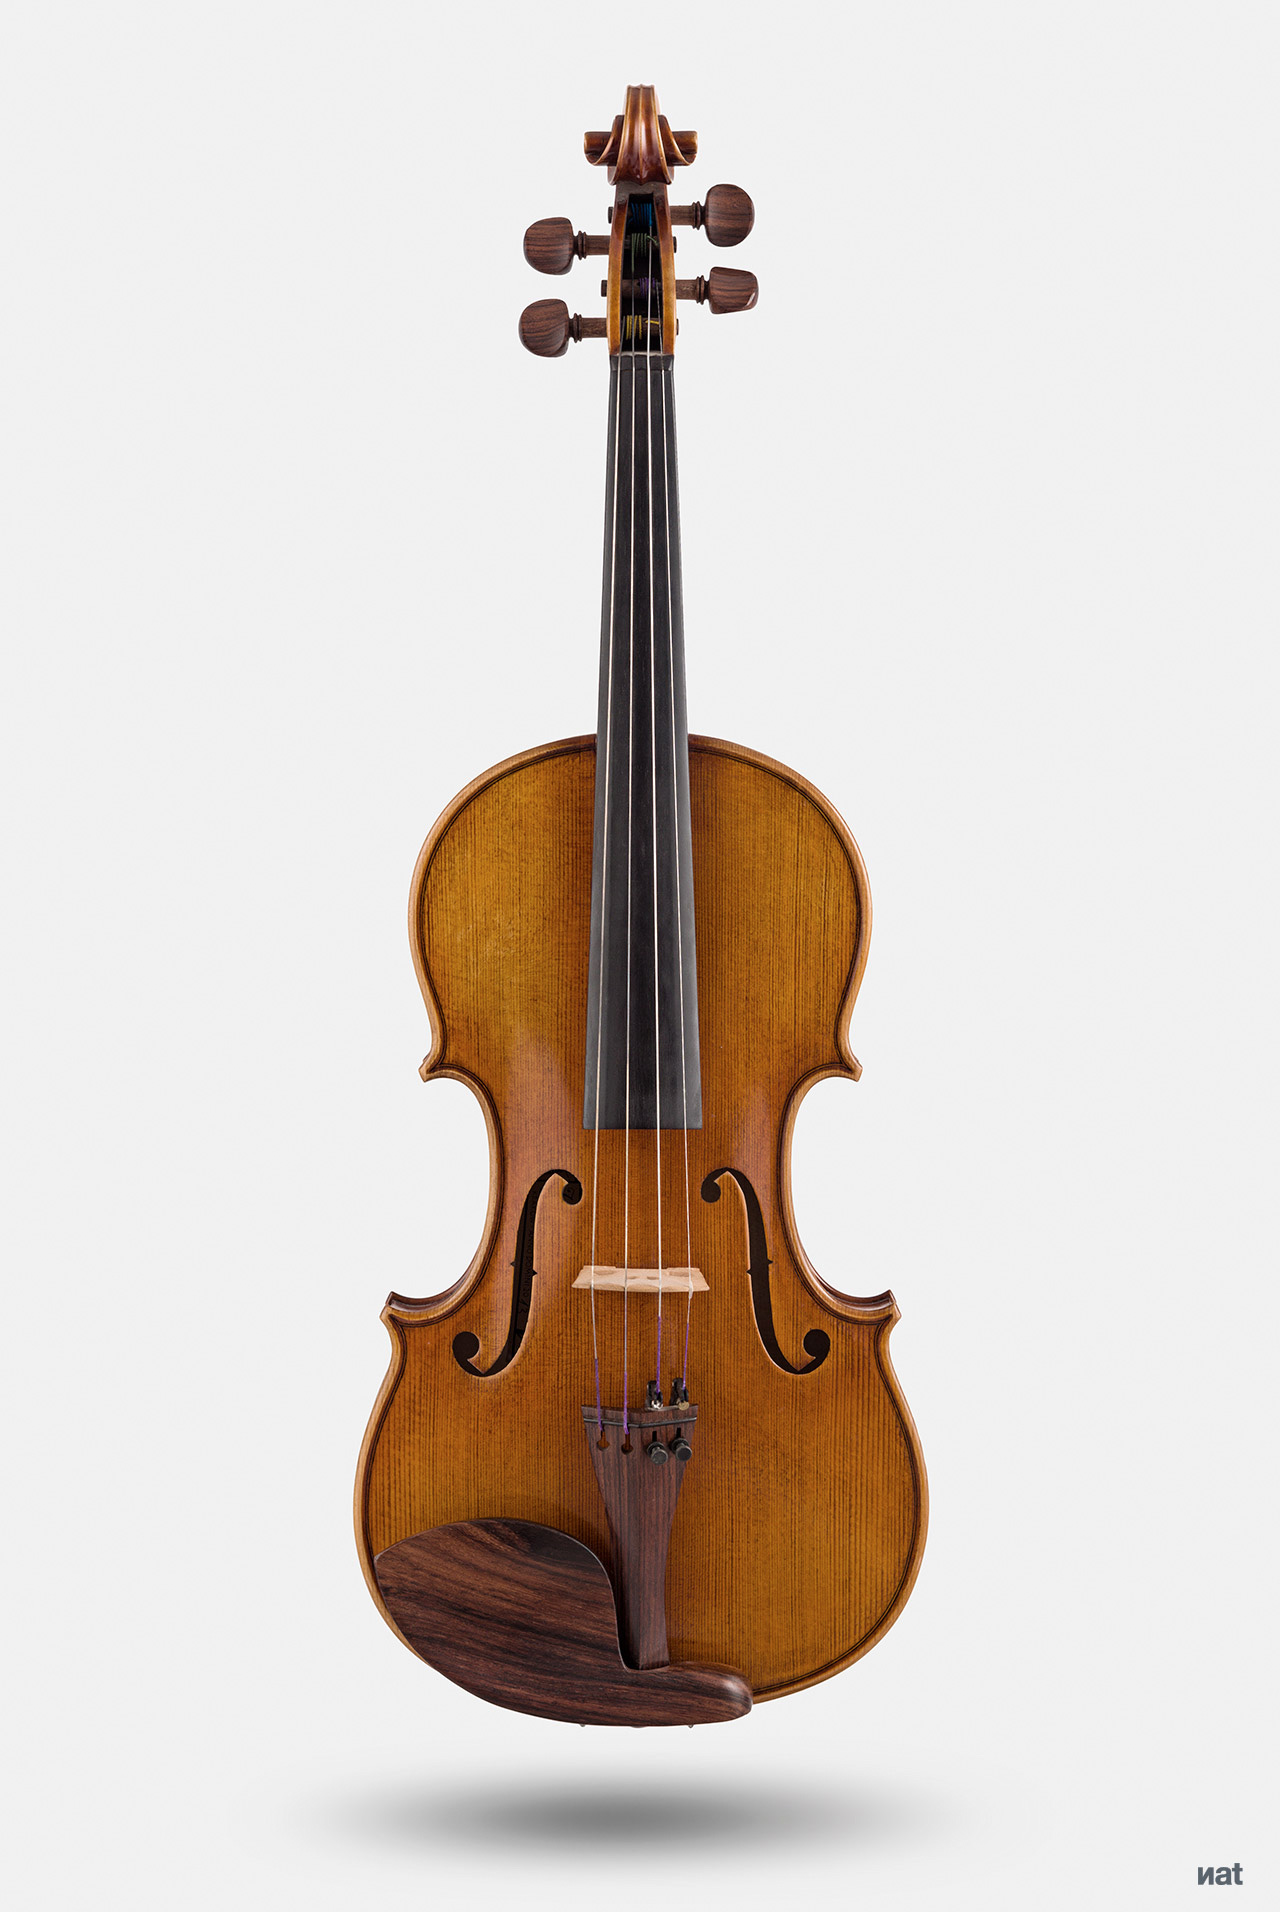 Frontal de un violín.